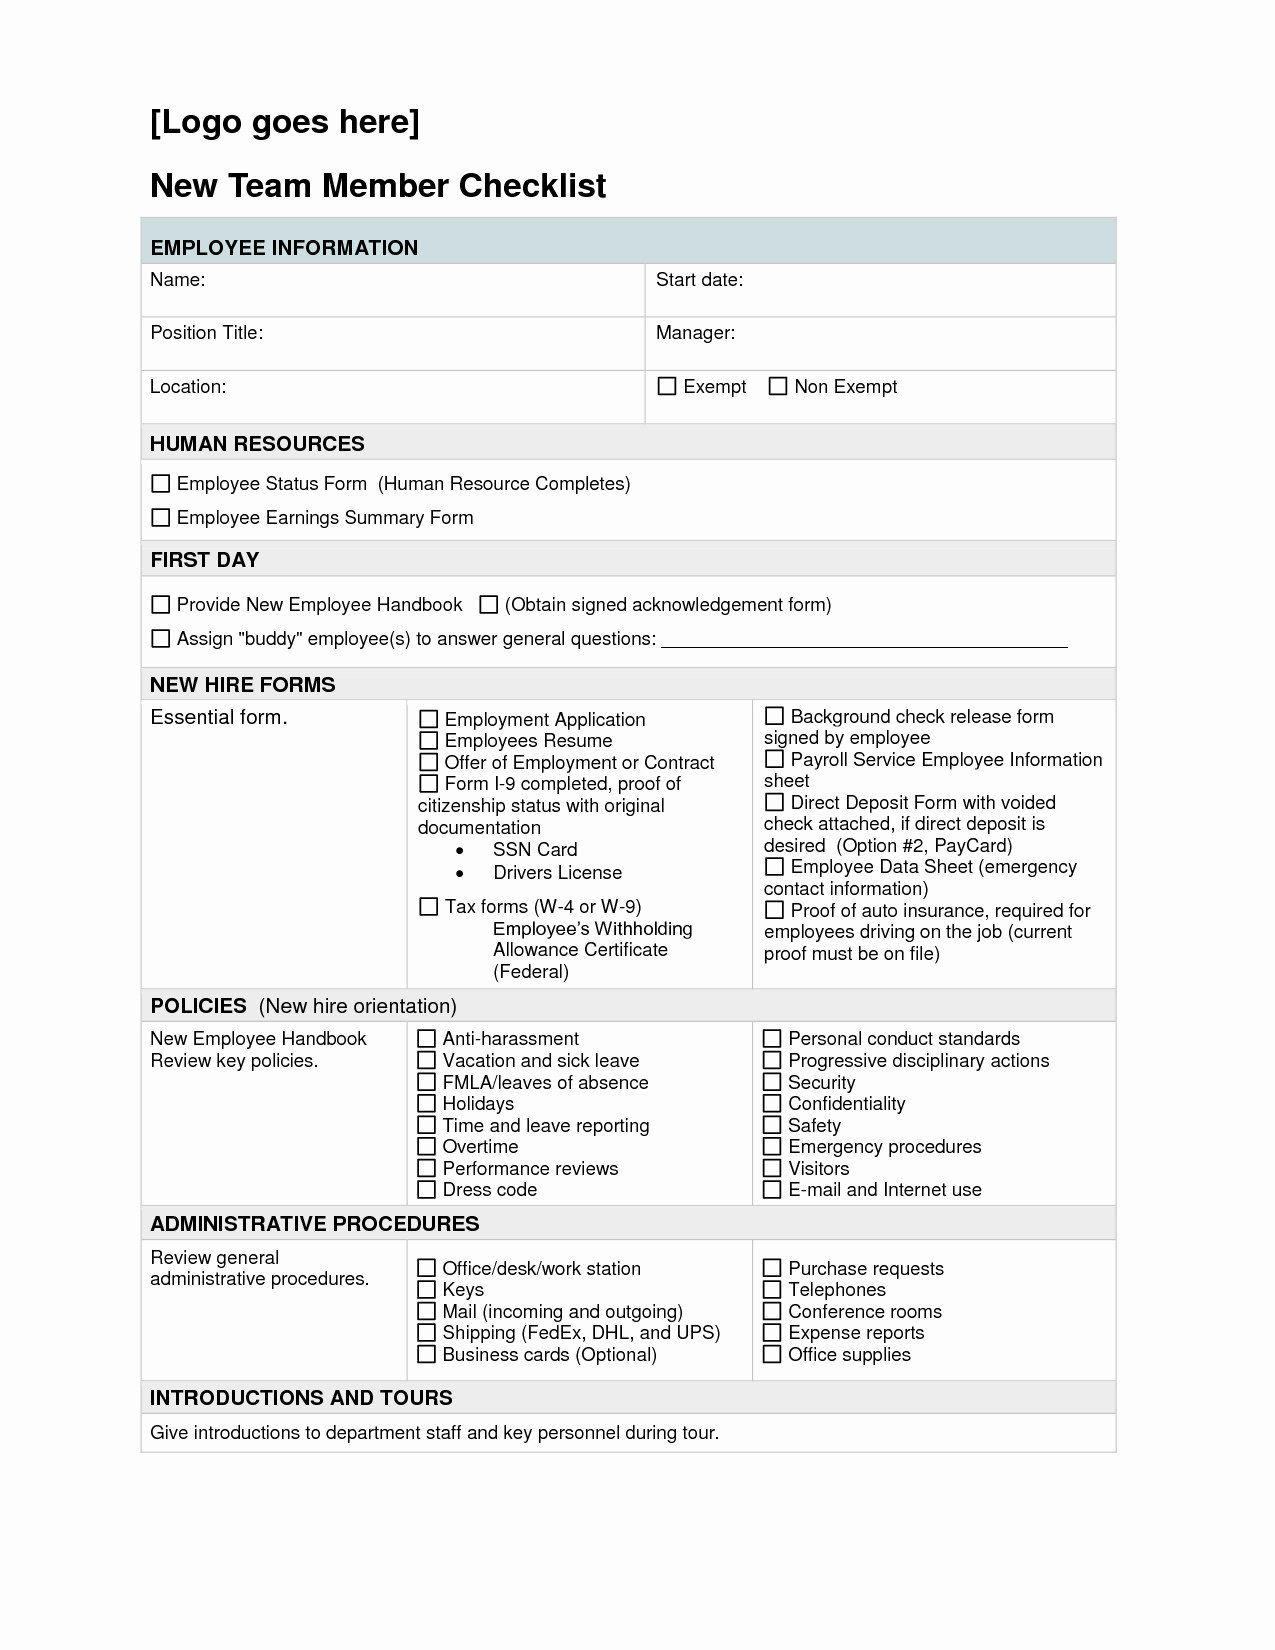 Personnel File Checklist Template Fresh Employee File Checklist New Copyrocess Streetersonnel